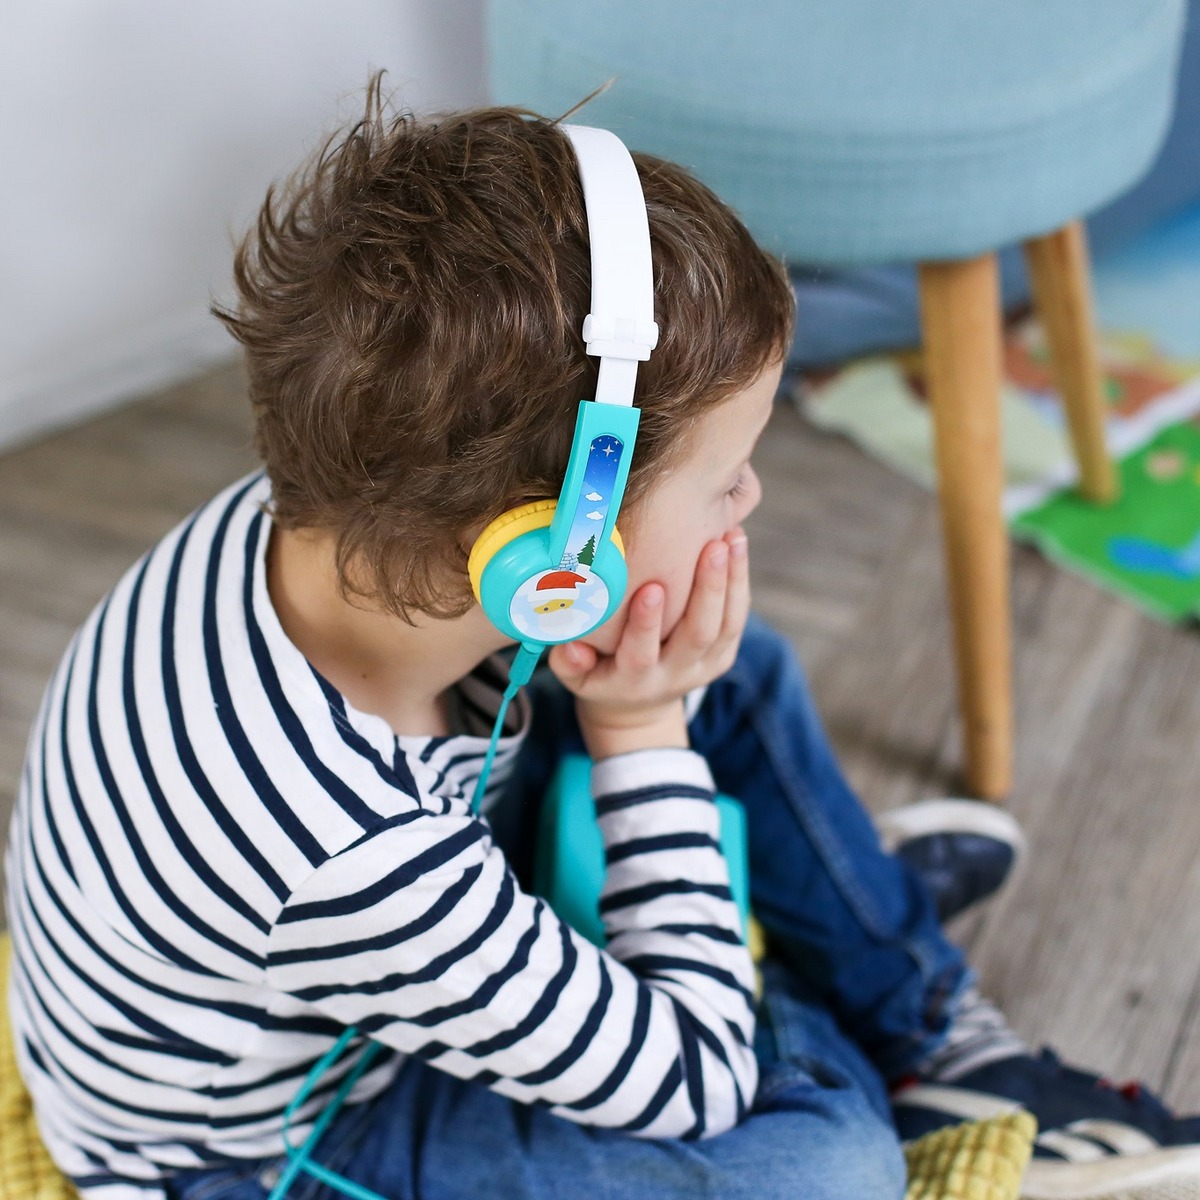 Lunii Octave Kids' Headphones, 1 ct - Kroger